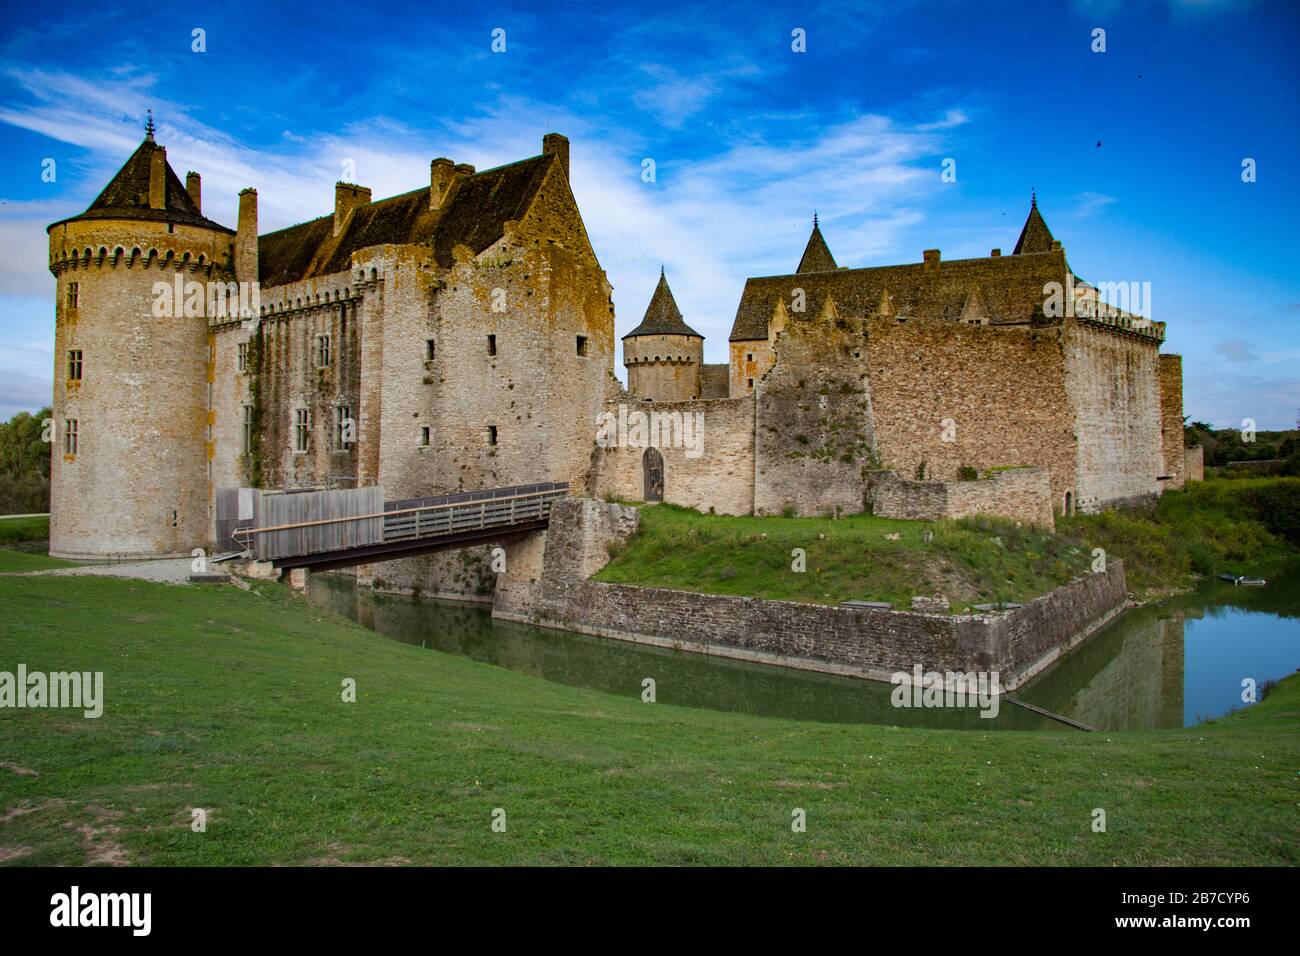 Chateau de Suscinio, castillo medieval con foso en la península de Presqu'ile de Rhuys en Morbihan, Bretaña, Francia, Foto de stock